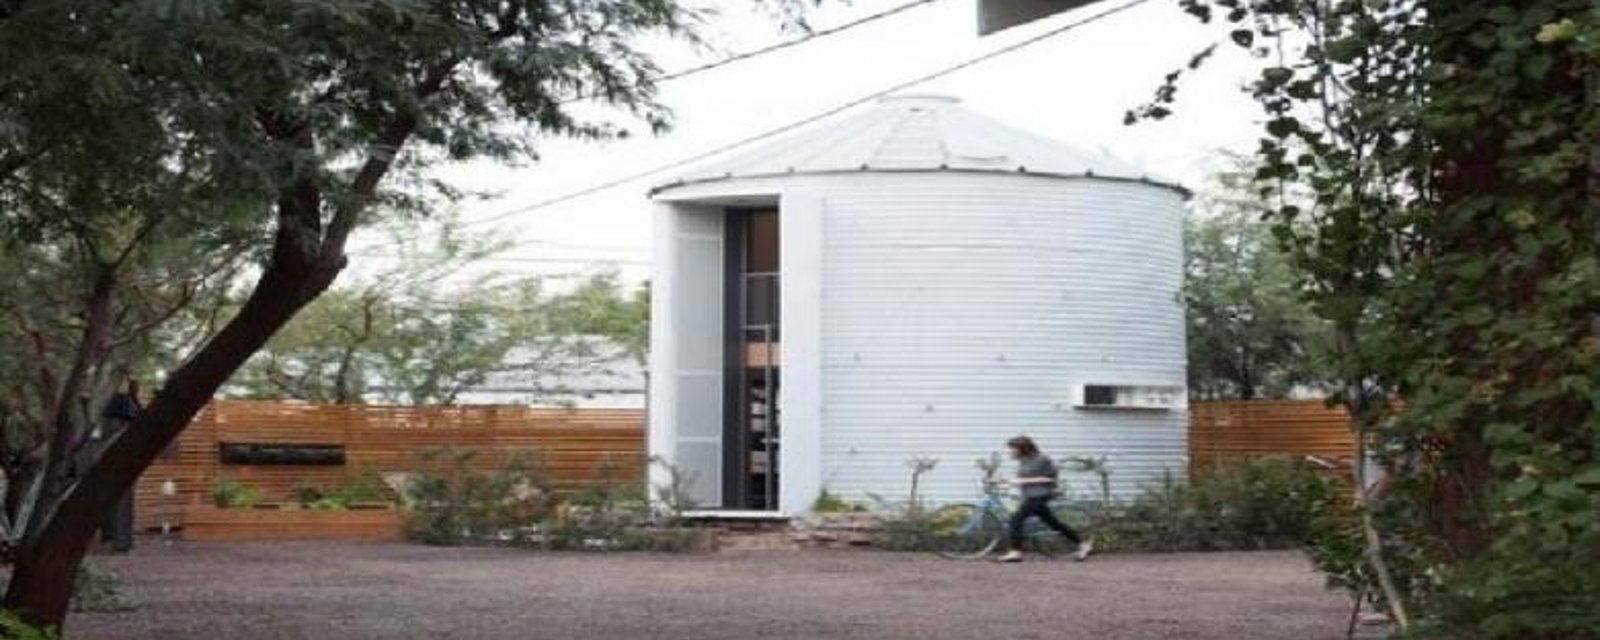 Un jeune architecte transforme un silo à grains : Voyez ce qui se cache à l'intérieur